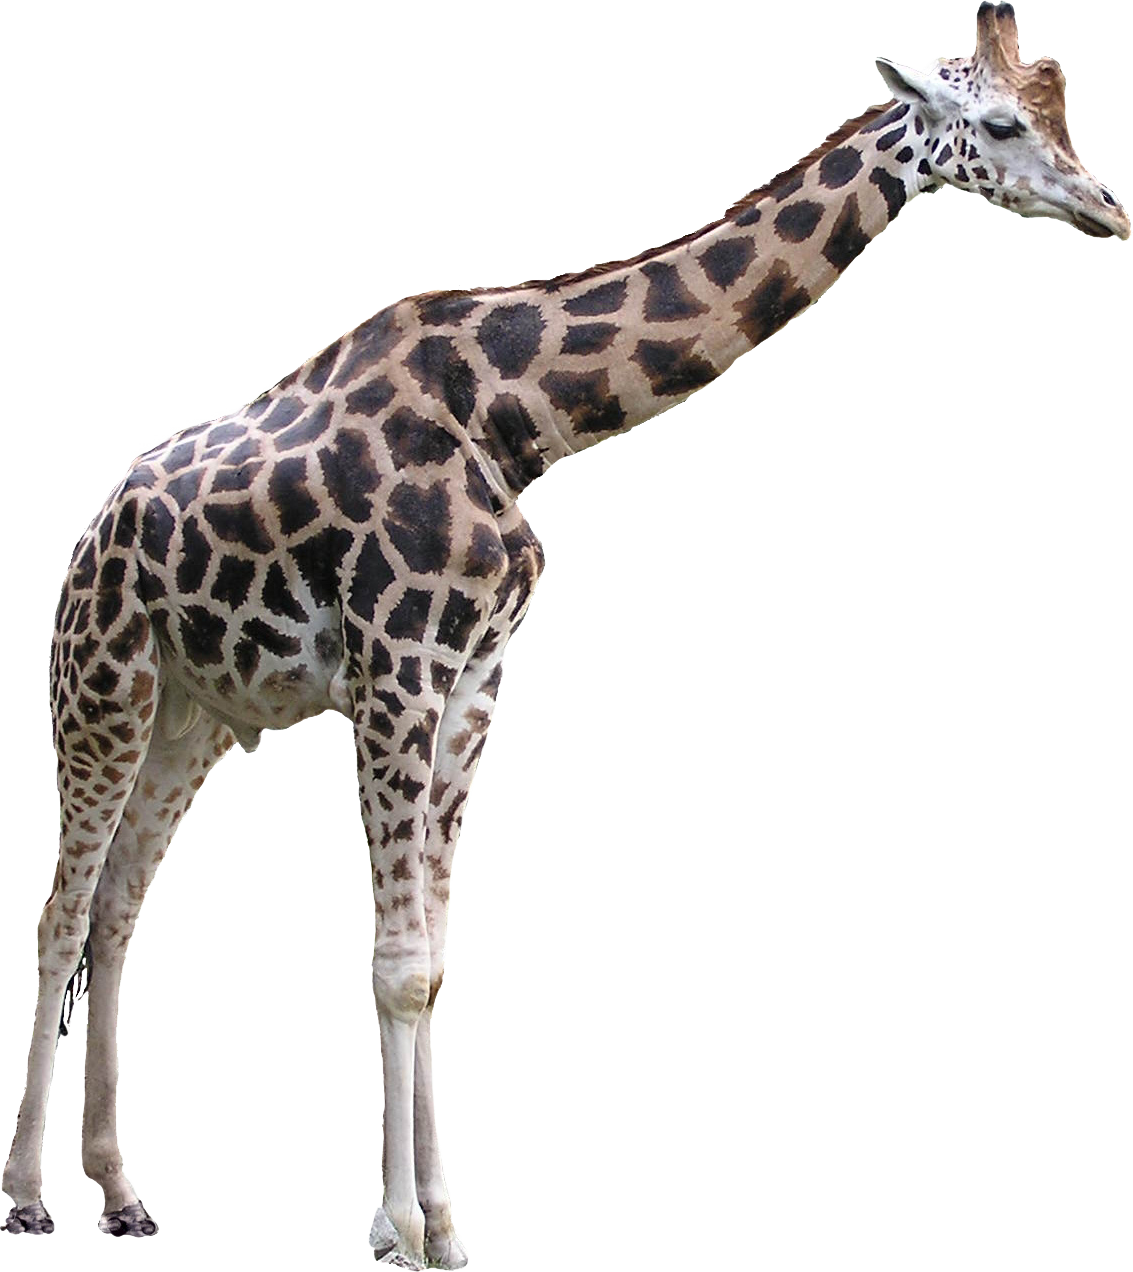 Foto do girafa PNG